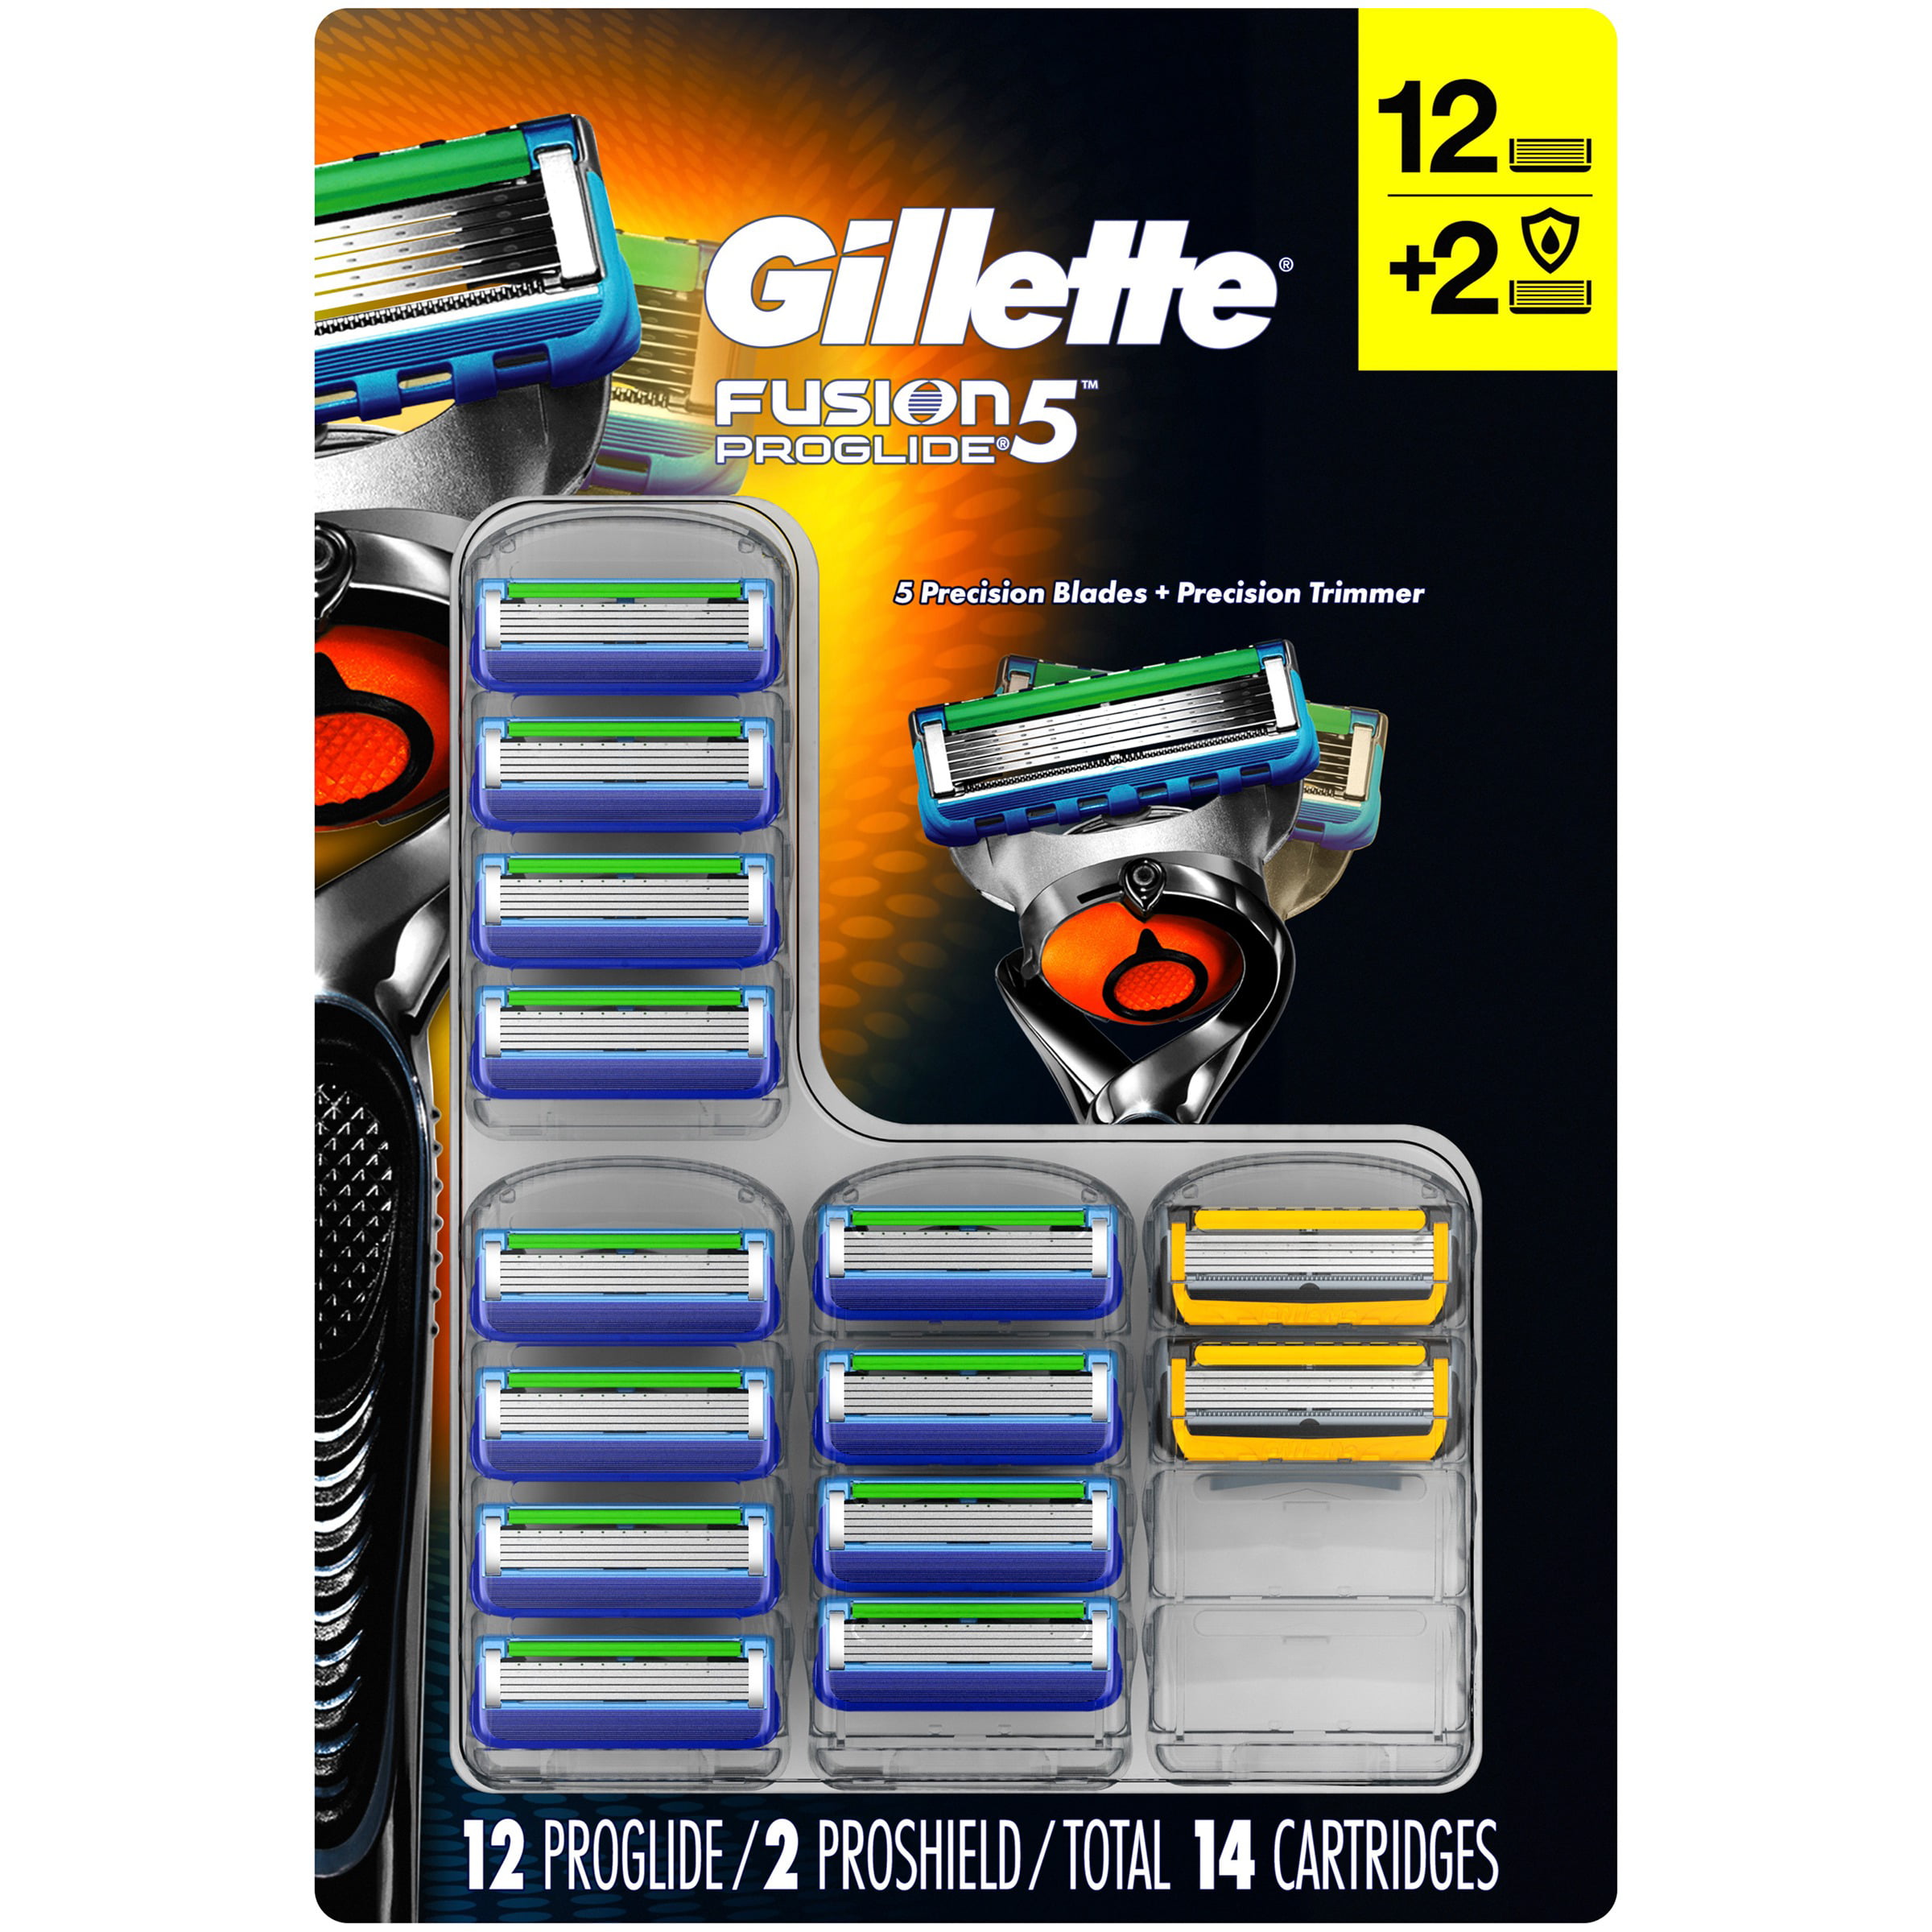 gillette-gillette-fusion5-proglide-razor-blades-plus-proshield